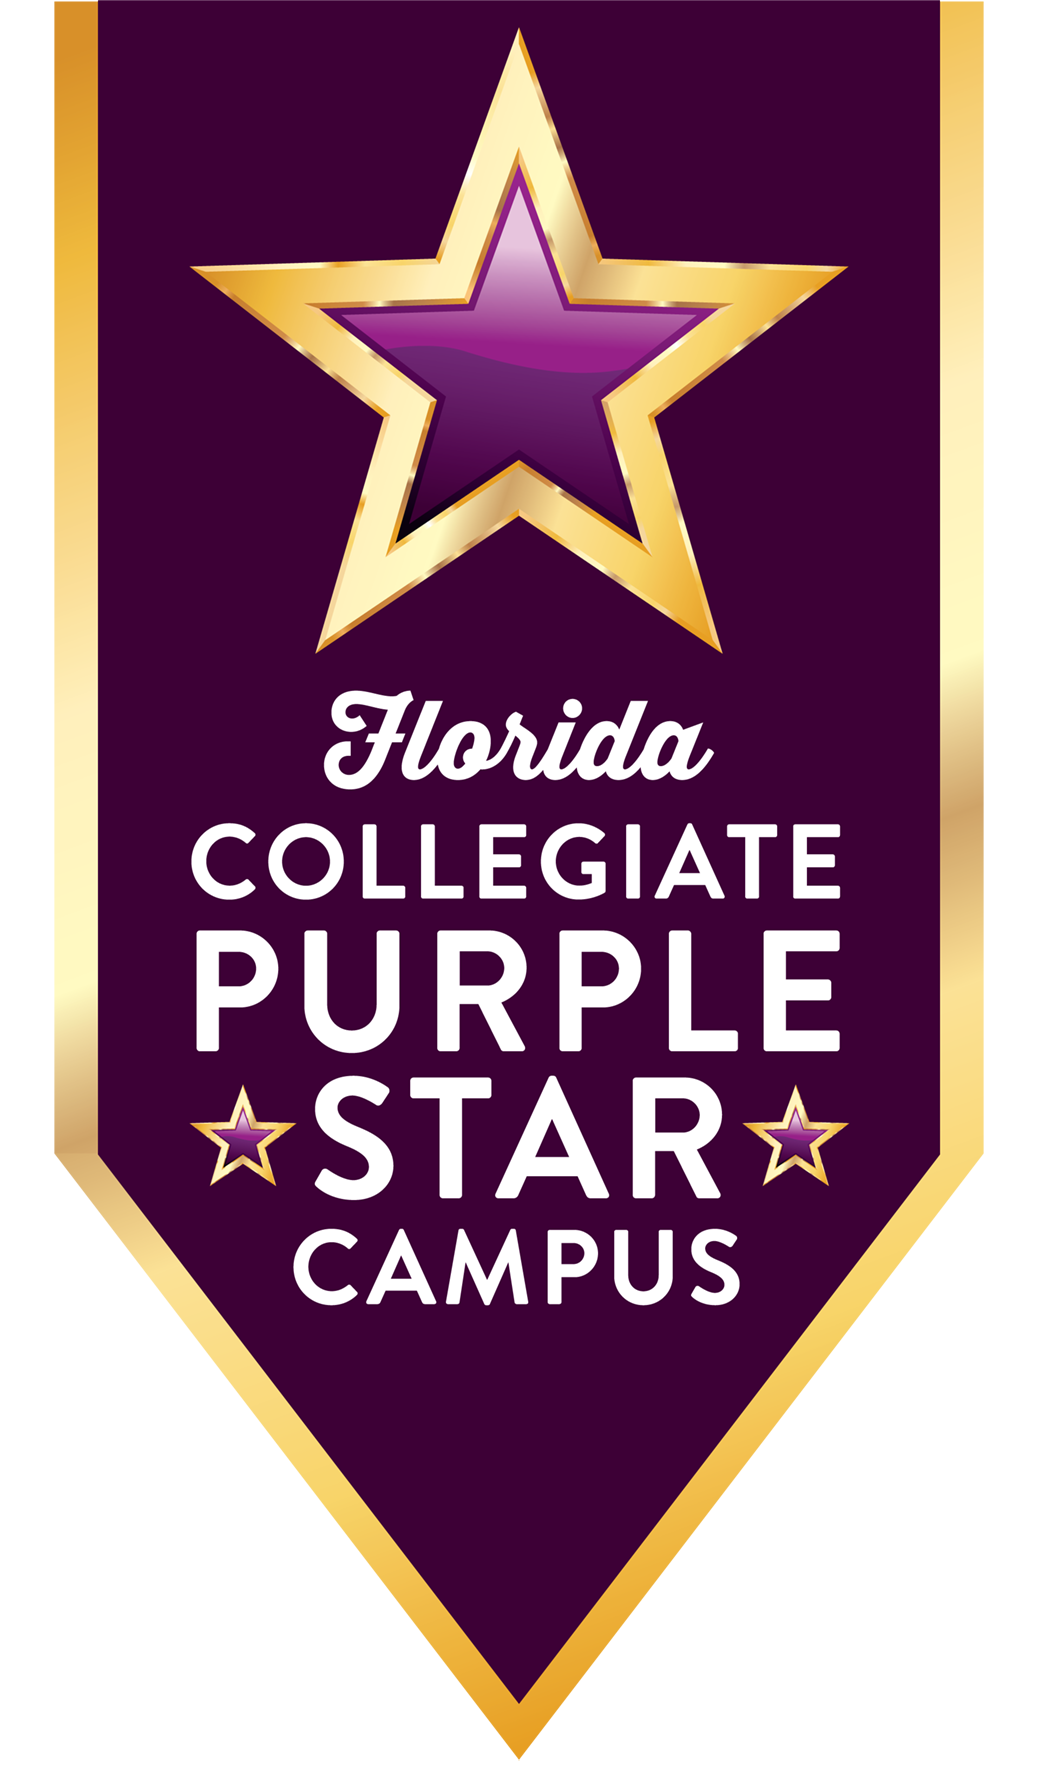 FL Collegiate Purple Star Campus logo